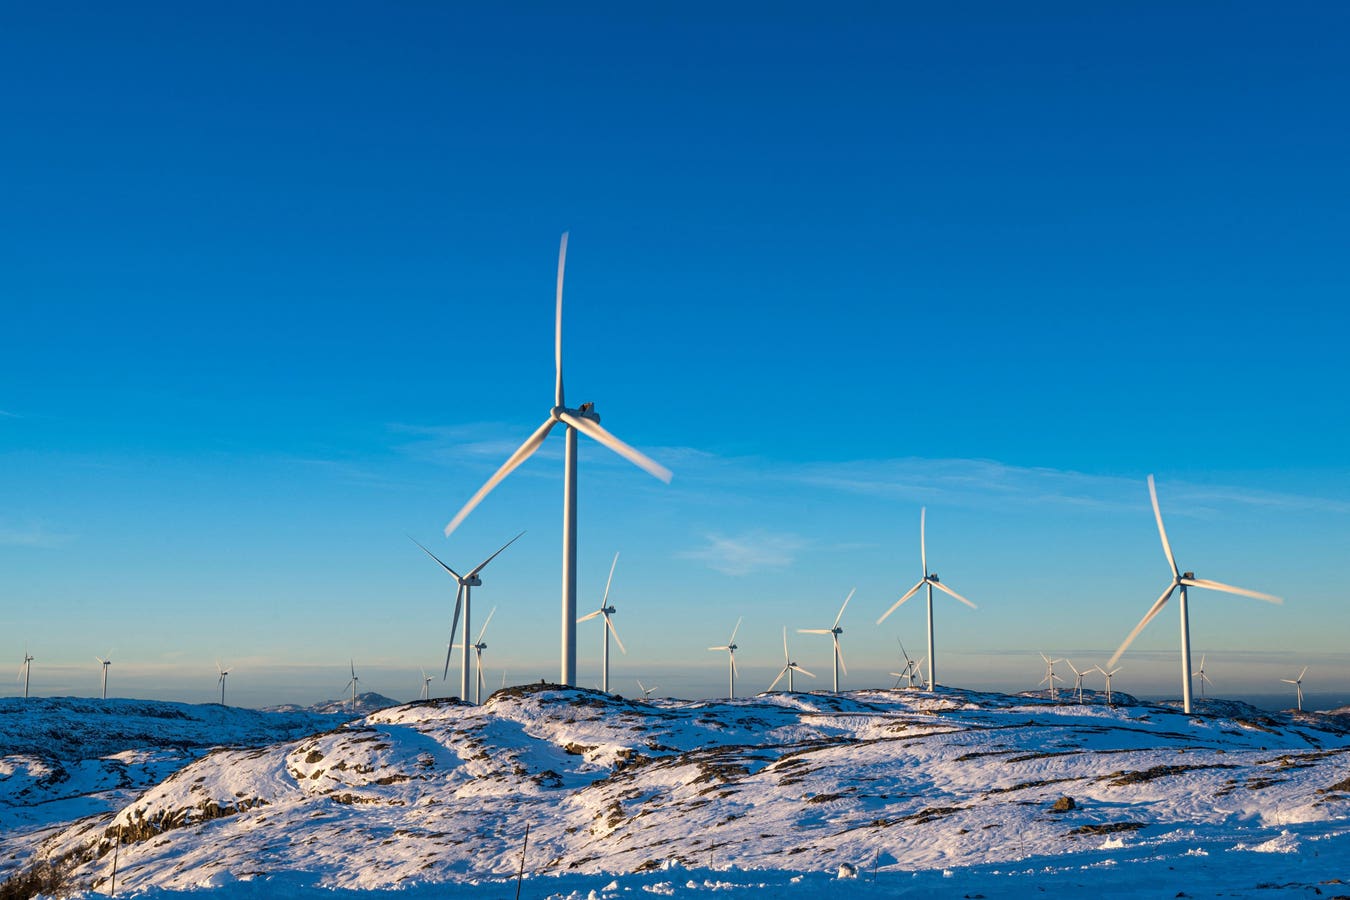 Les ambitions de la Norvège en matière d'énergie propre fondées sur la numérisation ne sont pas suffisantes - 15